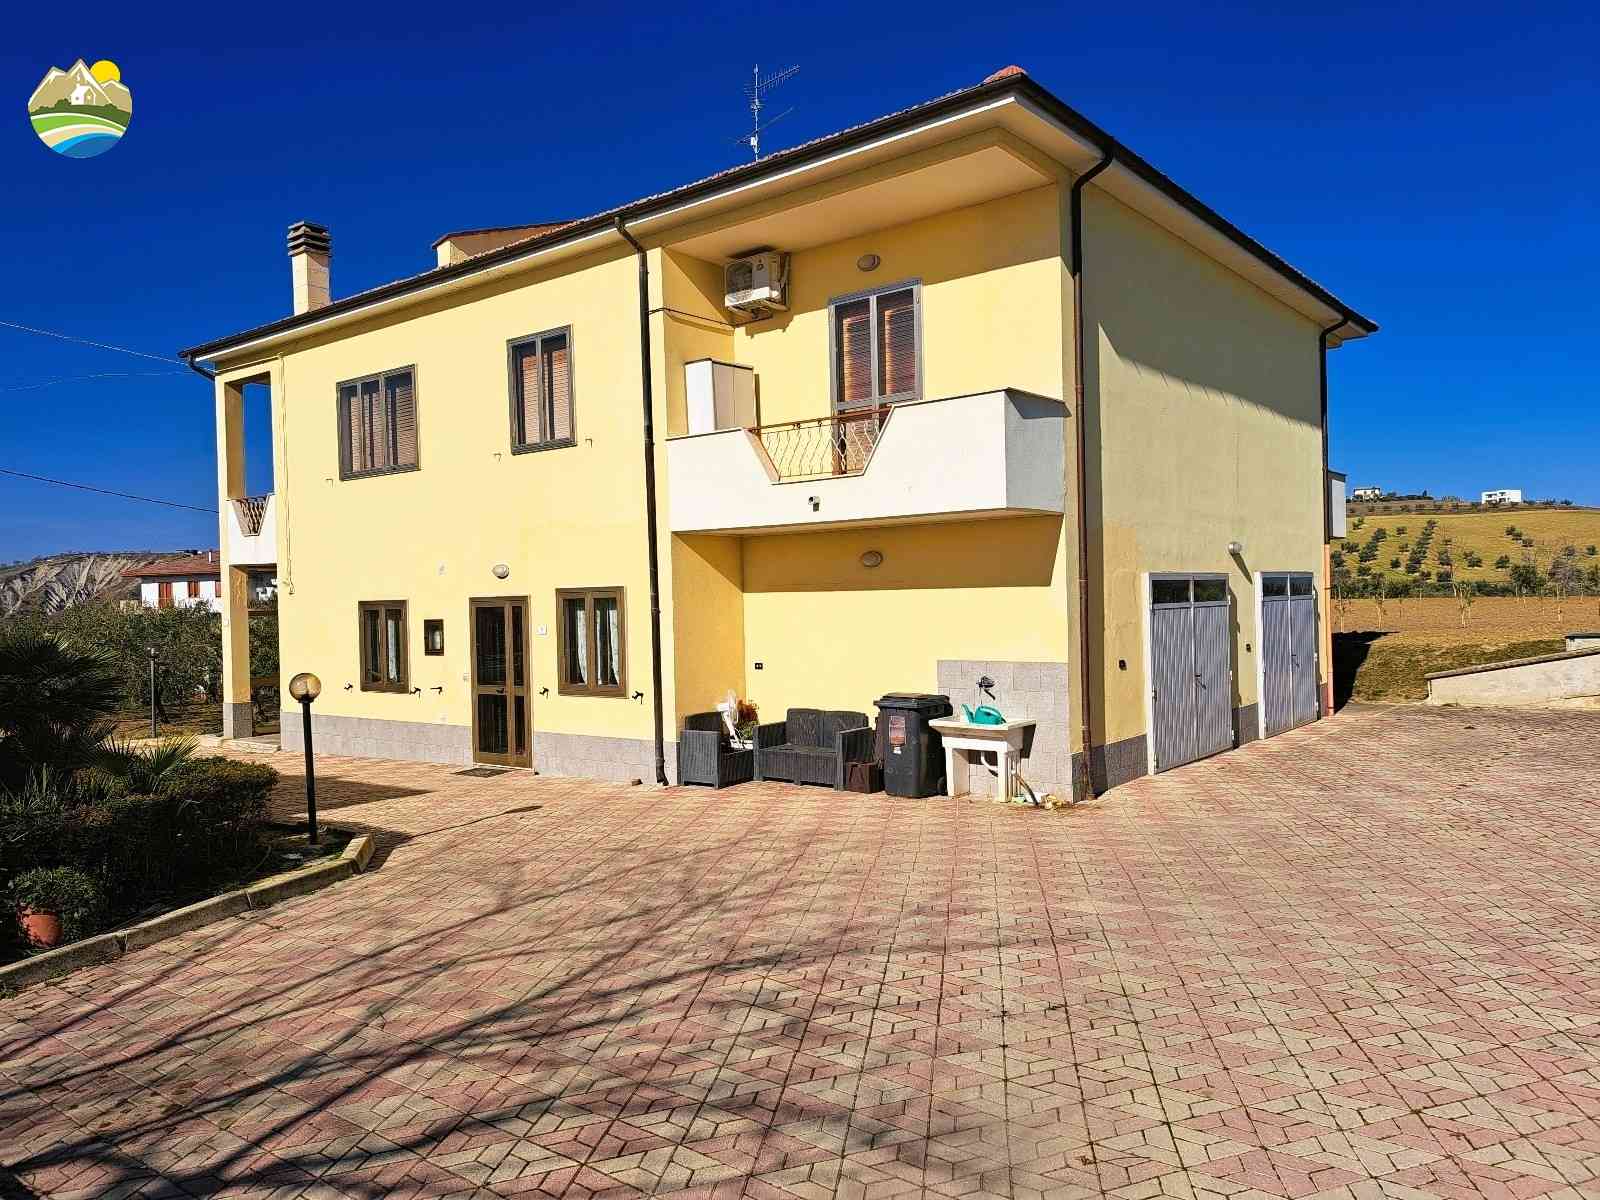 Casa di campagna Casa di campagna in vendita Montefino (TE), Casa Fiorella - Montefino - EUR 197.607 10